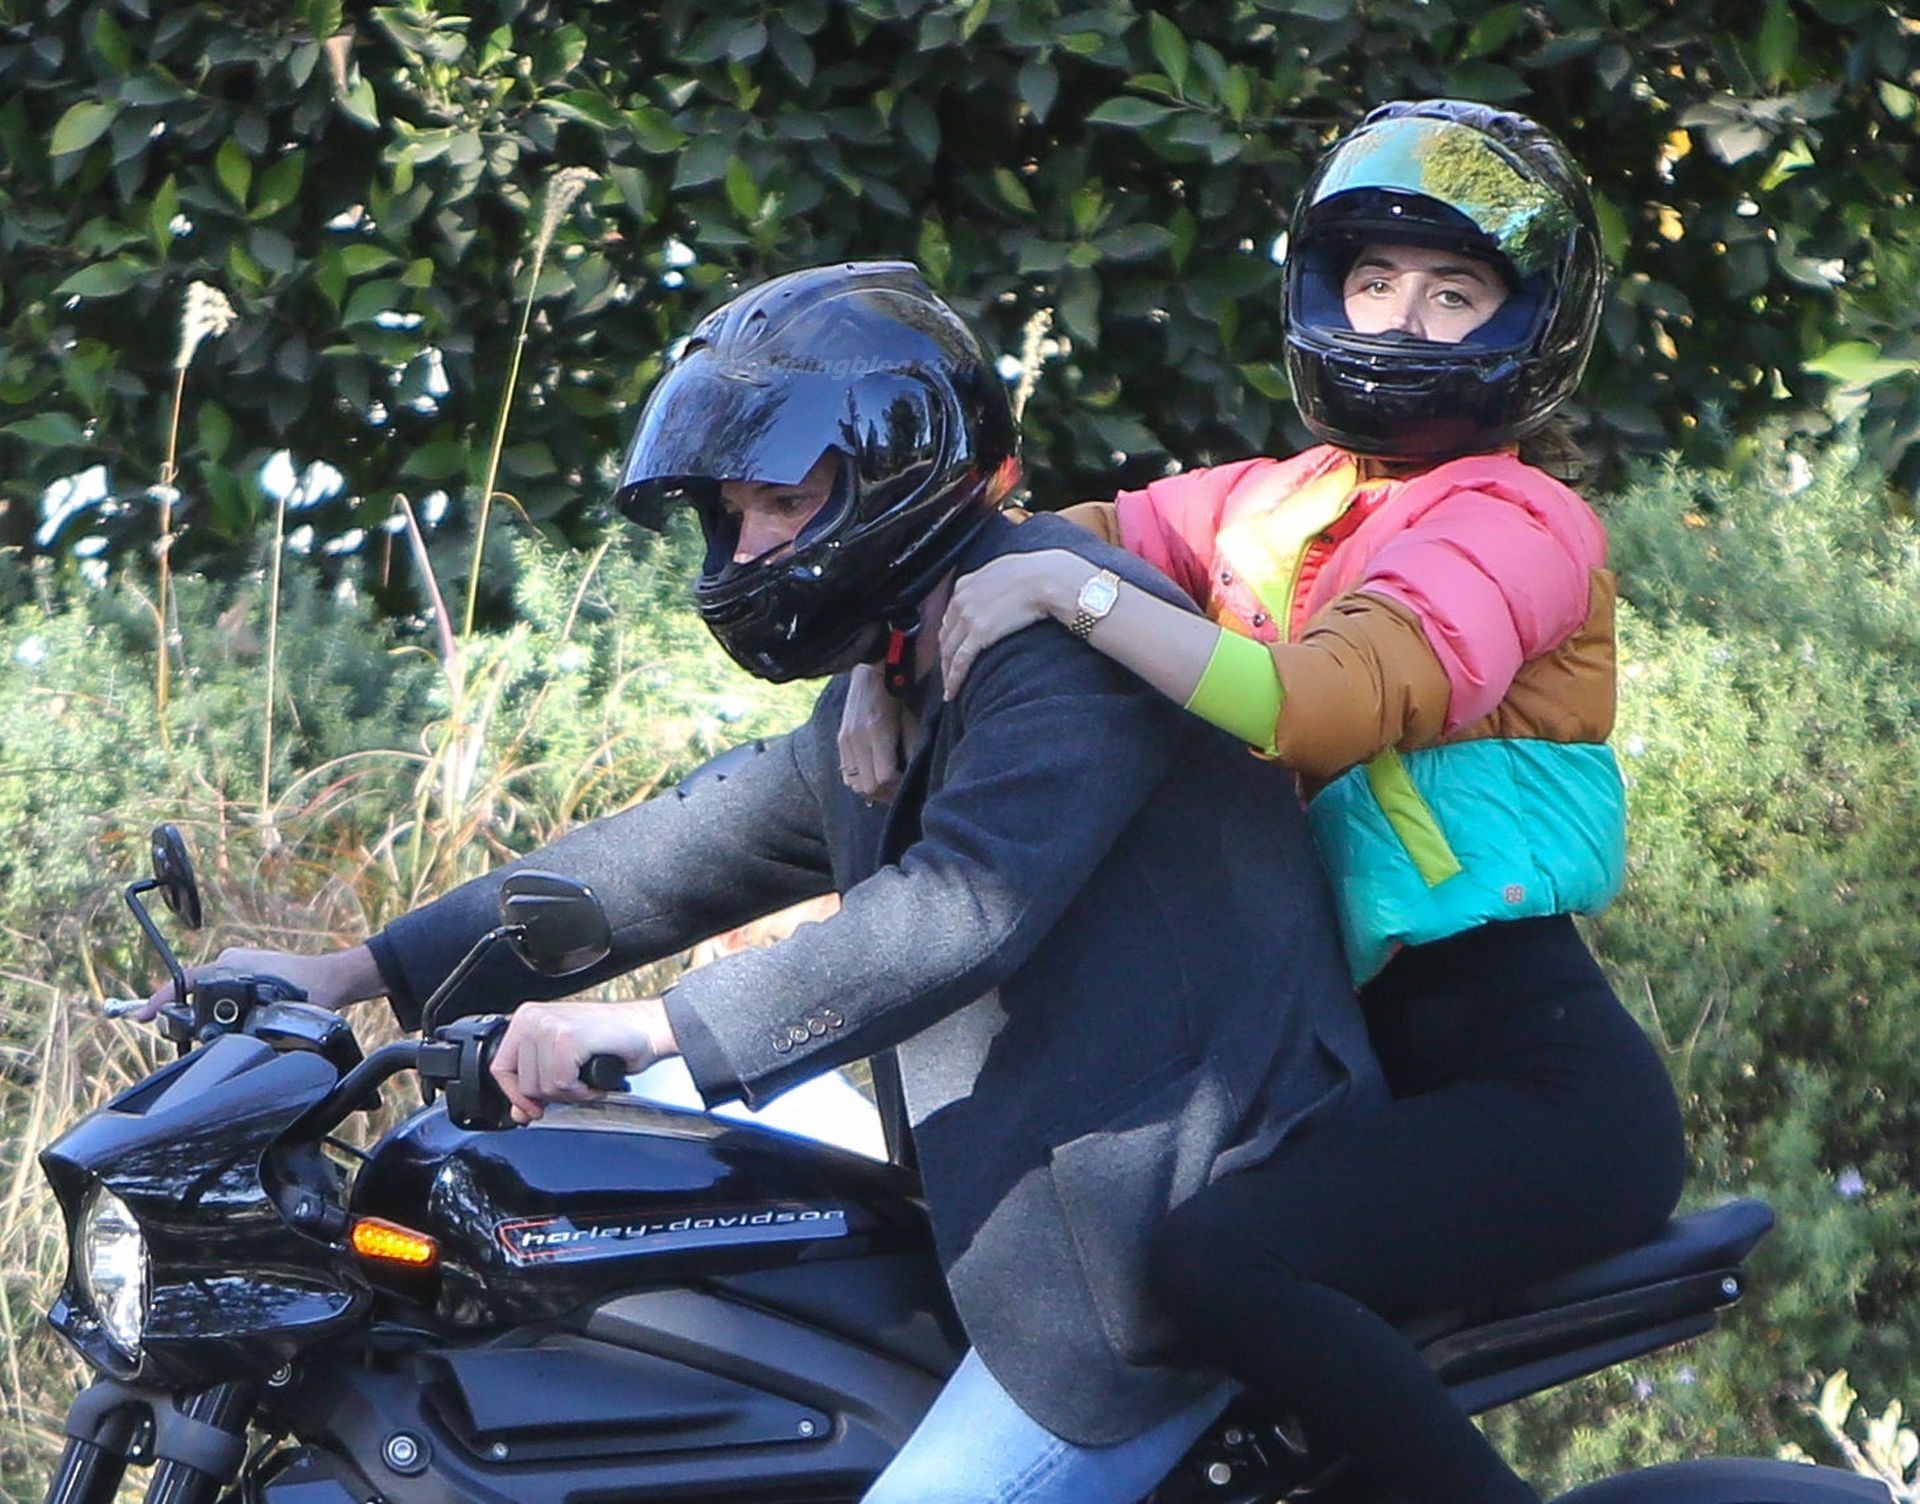 Ben Affleck & Ana de Armas are Seen on a Hot Ride (47 Photos)